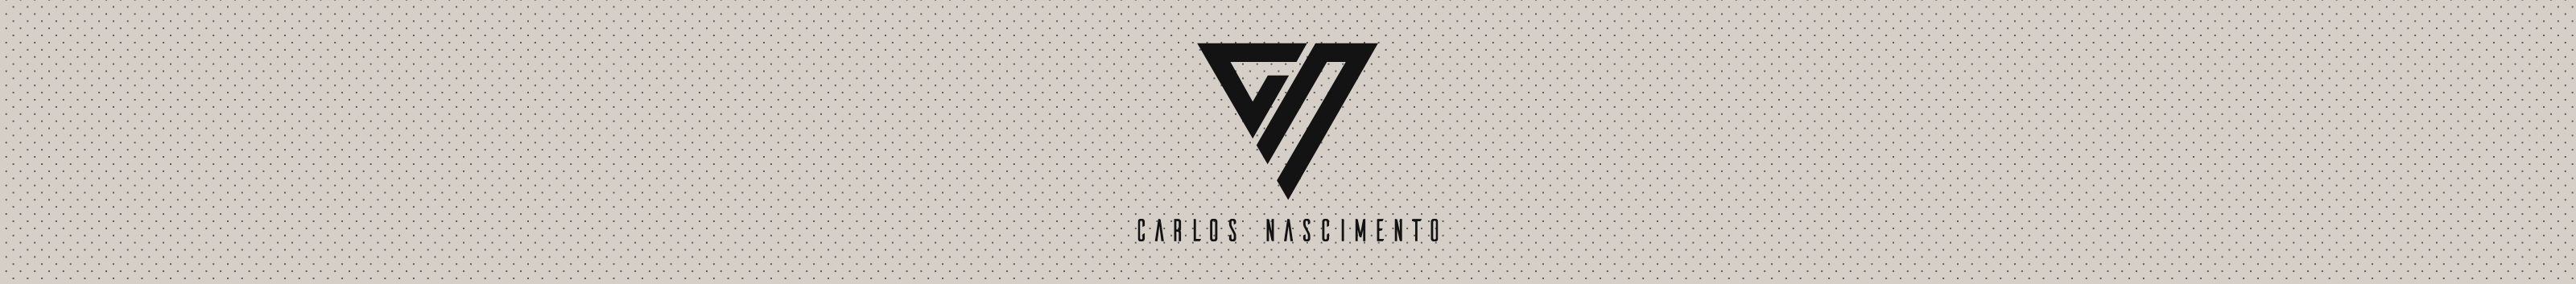 Bannière de profil de Carlos Nascimento